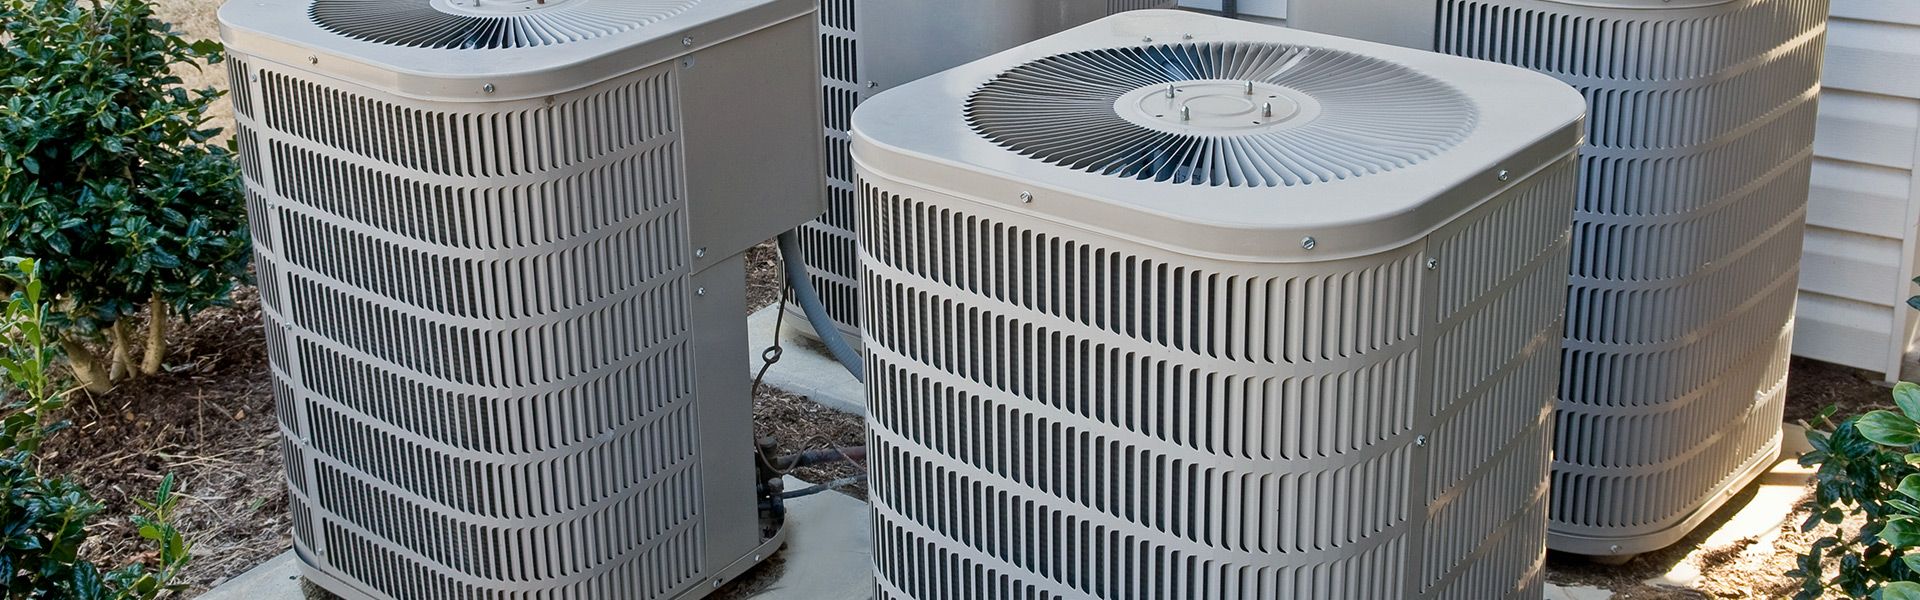 Air Conditioner Replacement in Delray Beach, Boca Raton, Boynton Beach, Tamarac